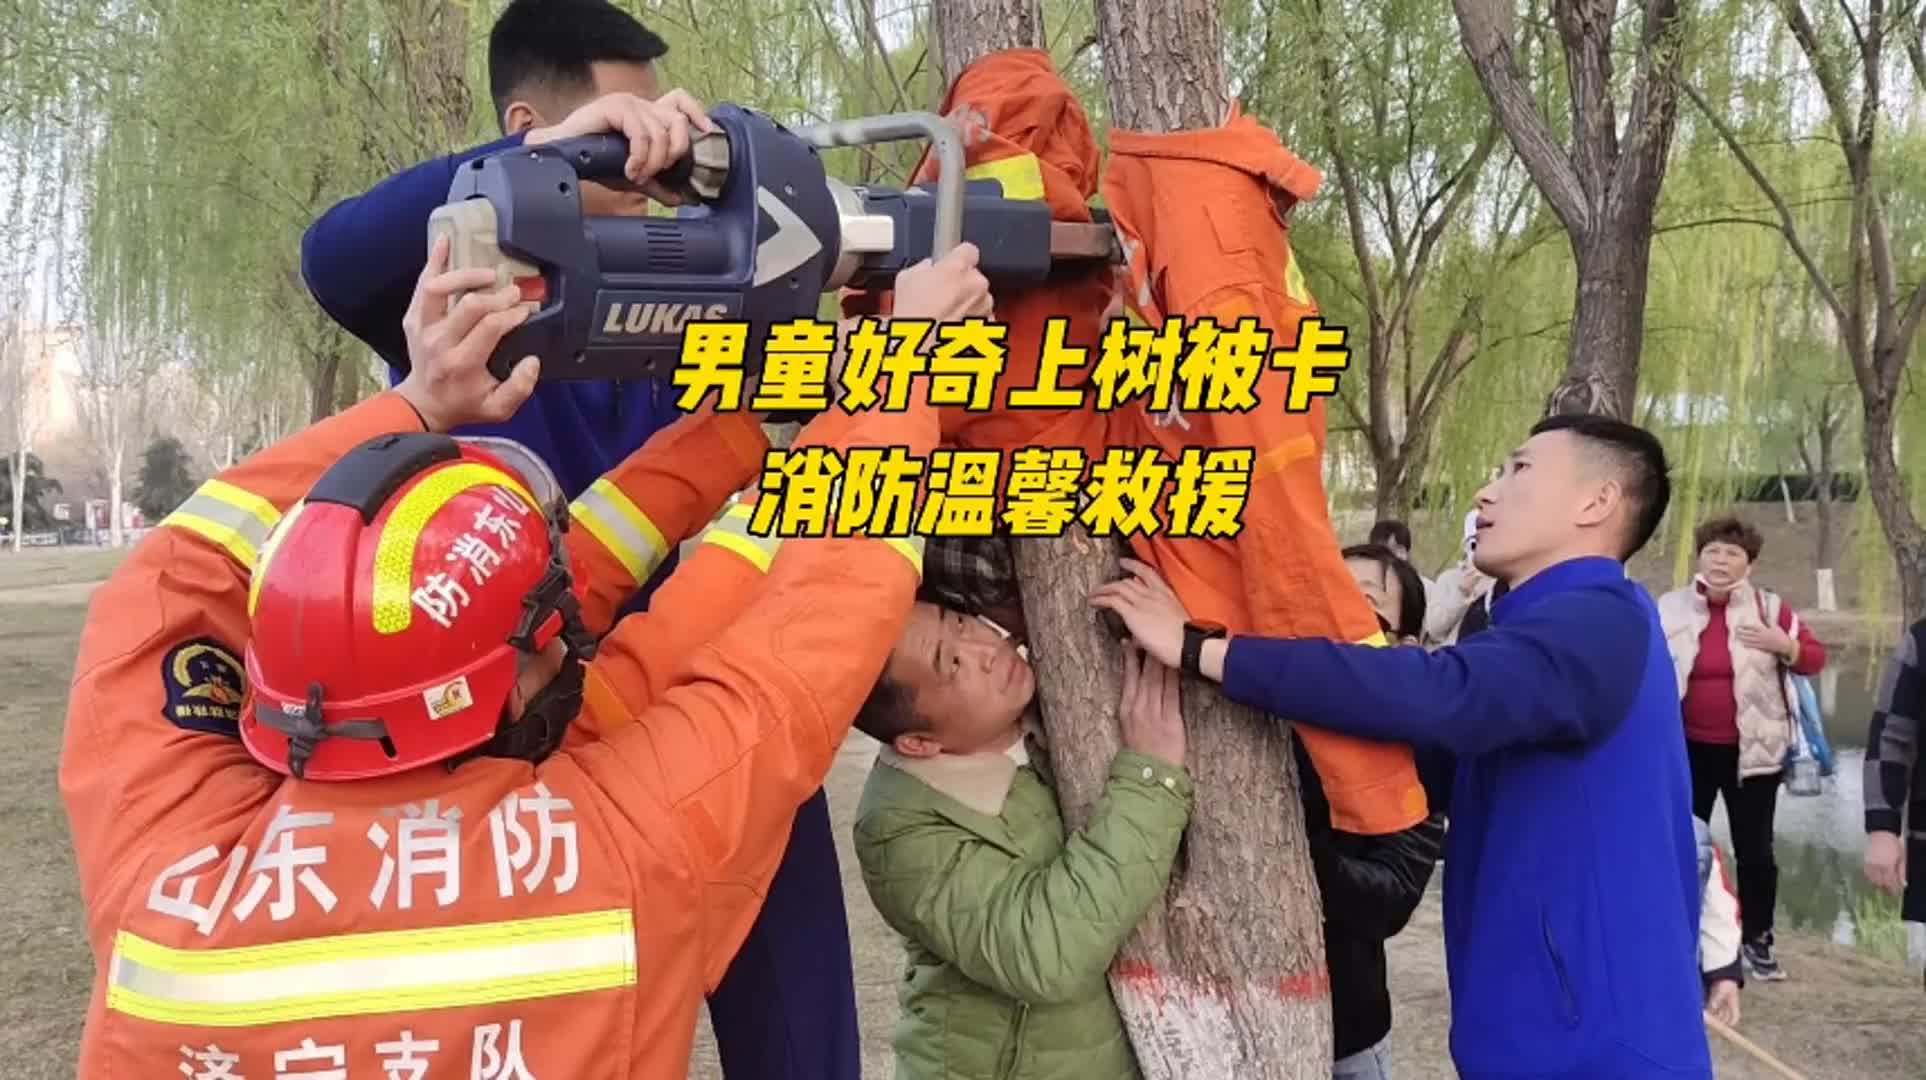 更济宁 | 男童好奇上树被卡 消防温馨救援